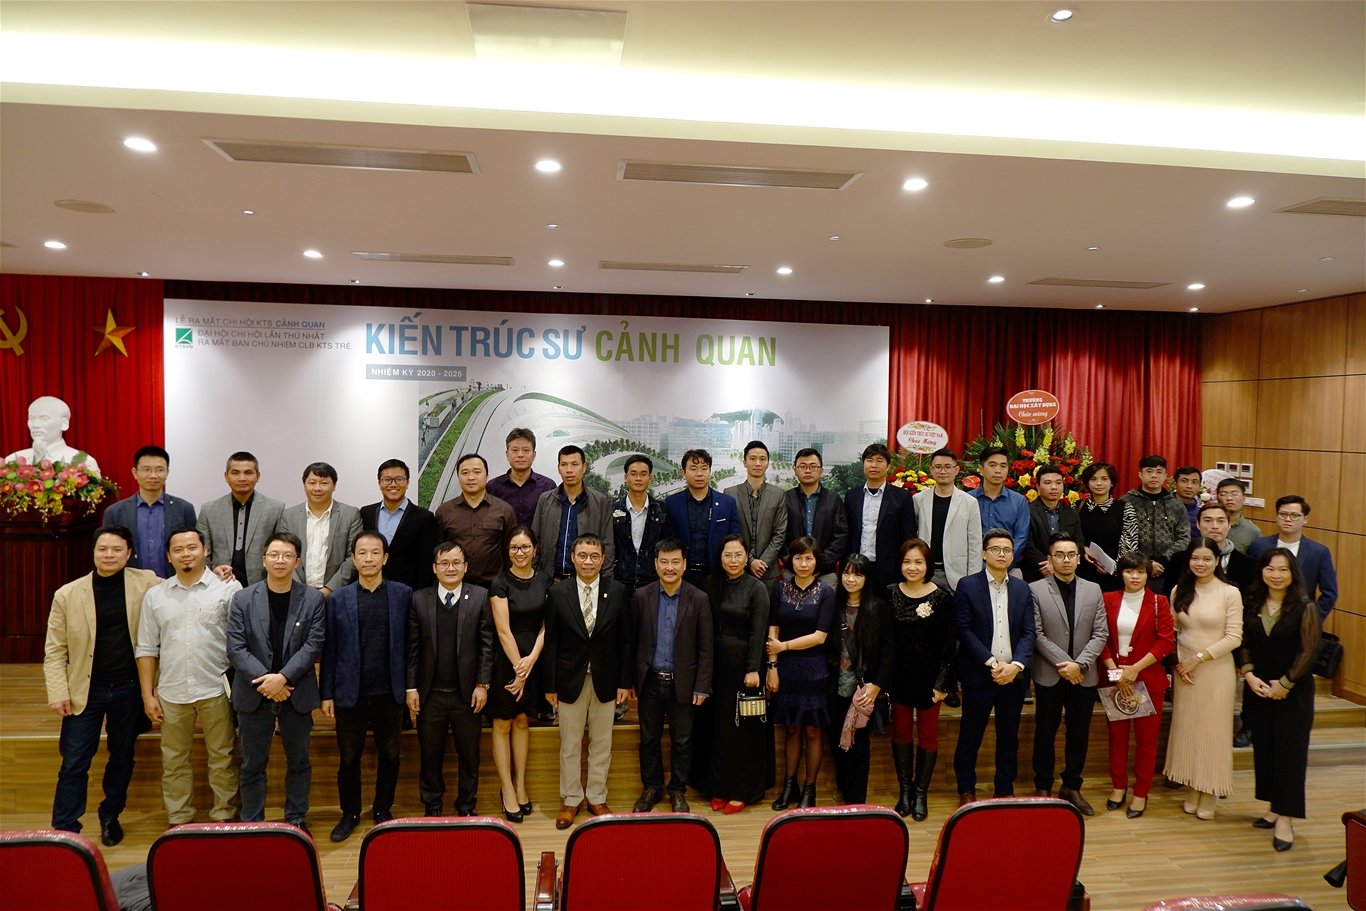 Lễ ra mắt Chi hội Kiến trúc sư Cảnh quan đầu tiên tại Việt Nam